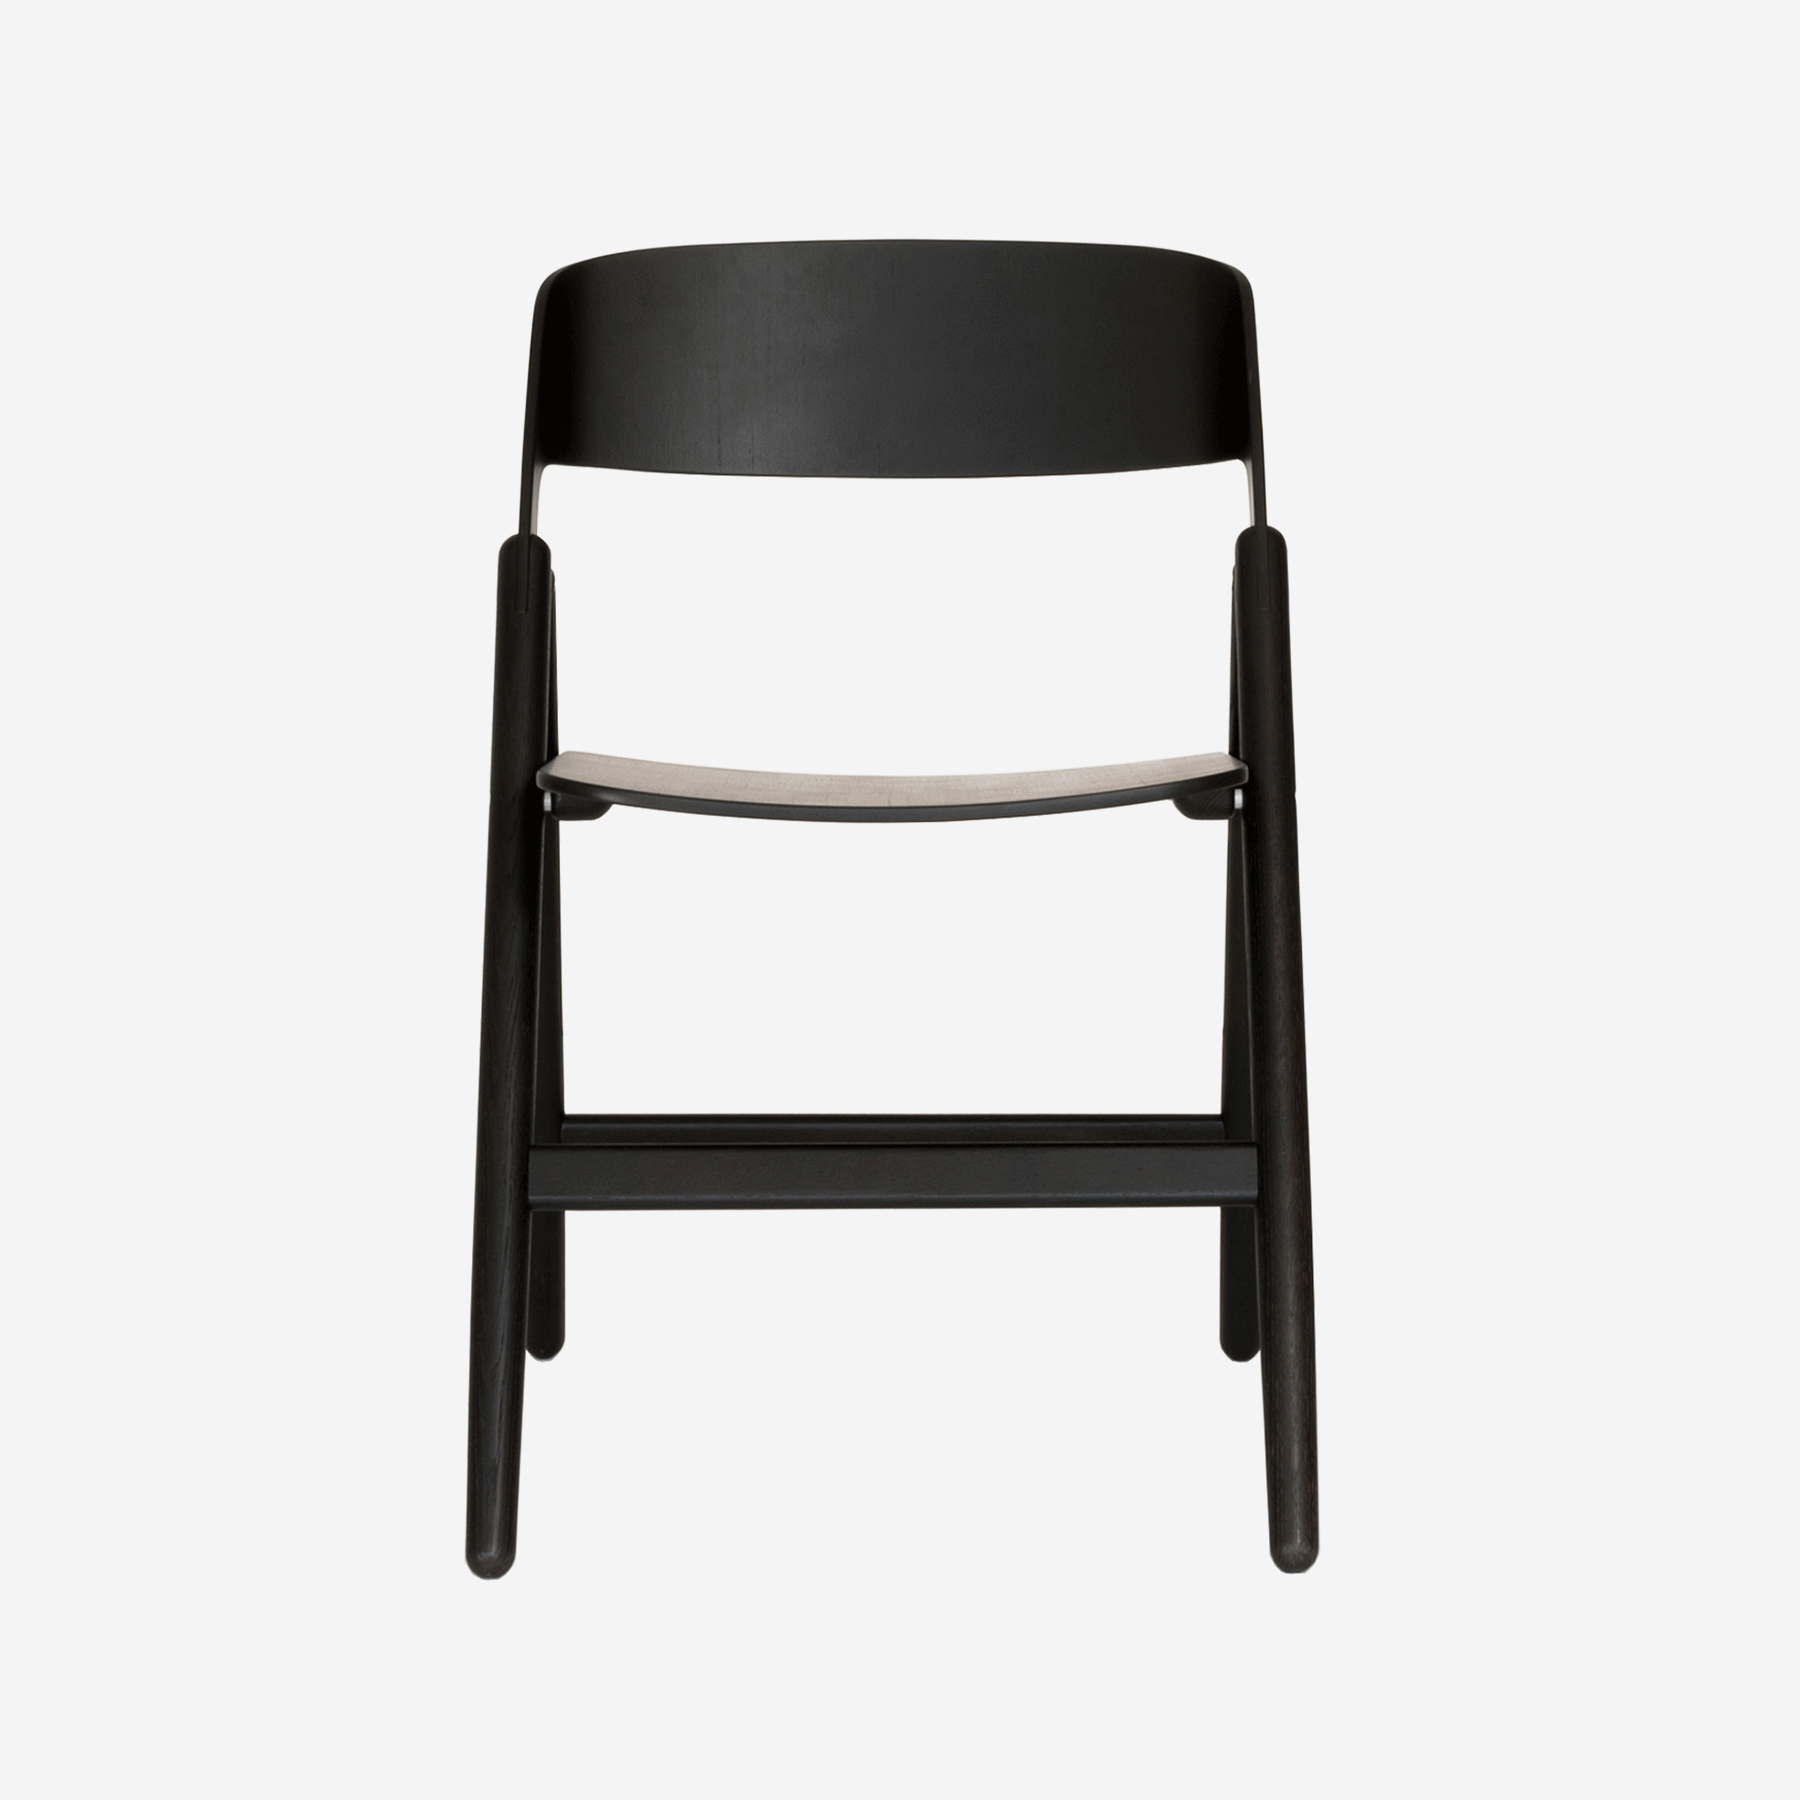 Narin Folding Chair, Black